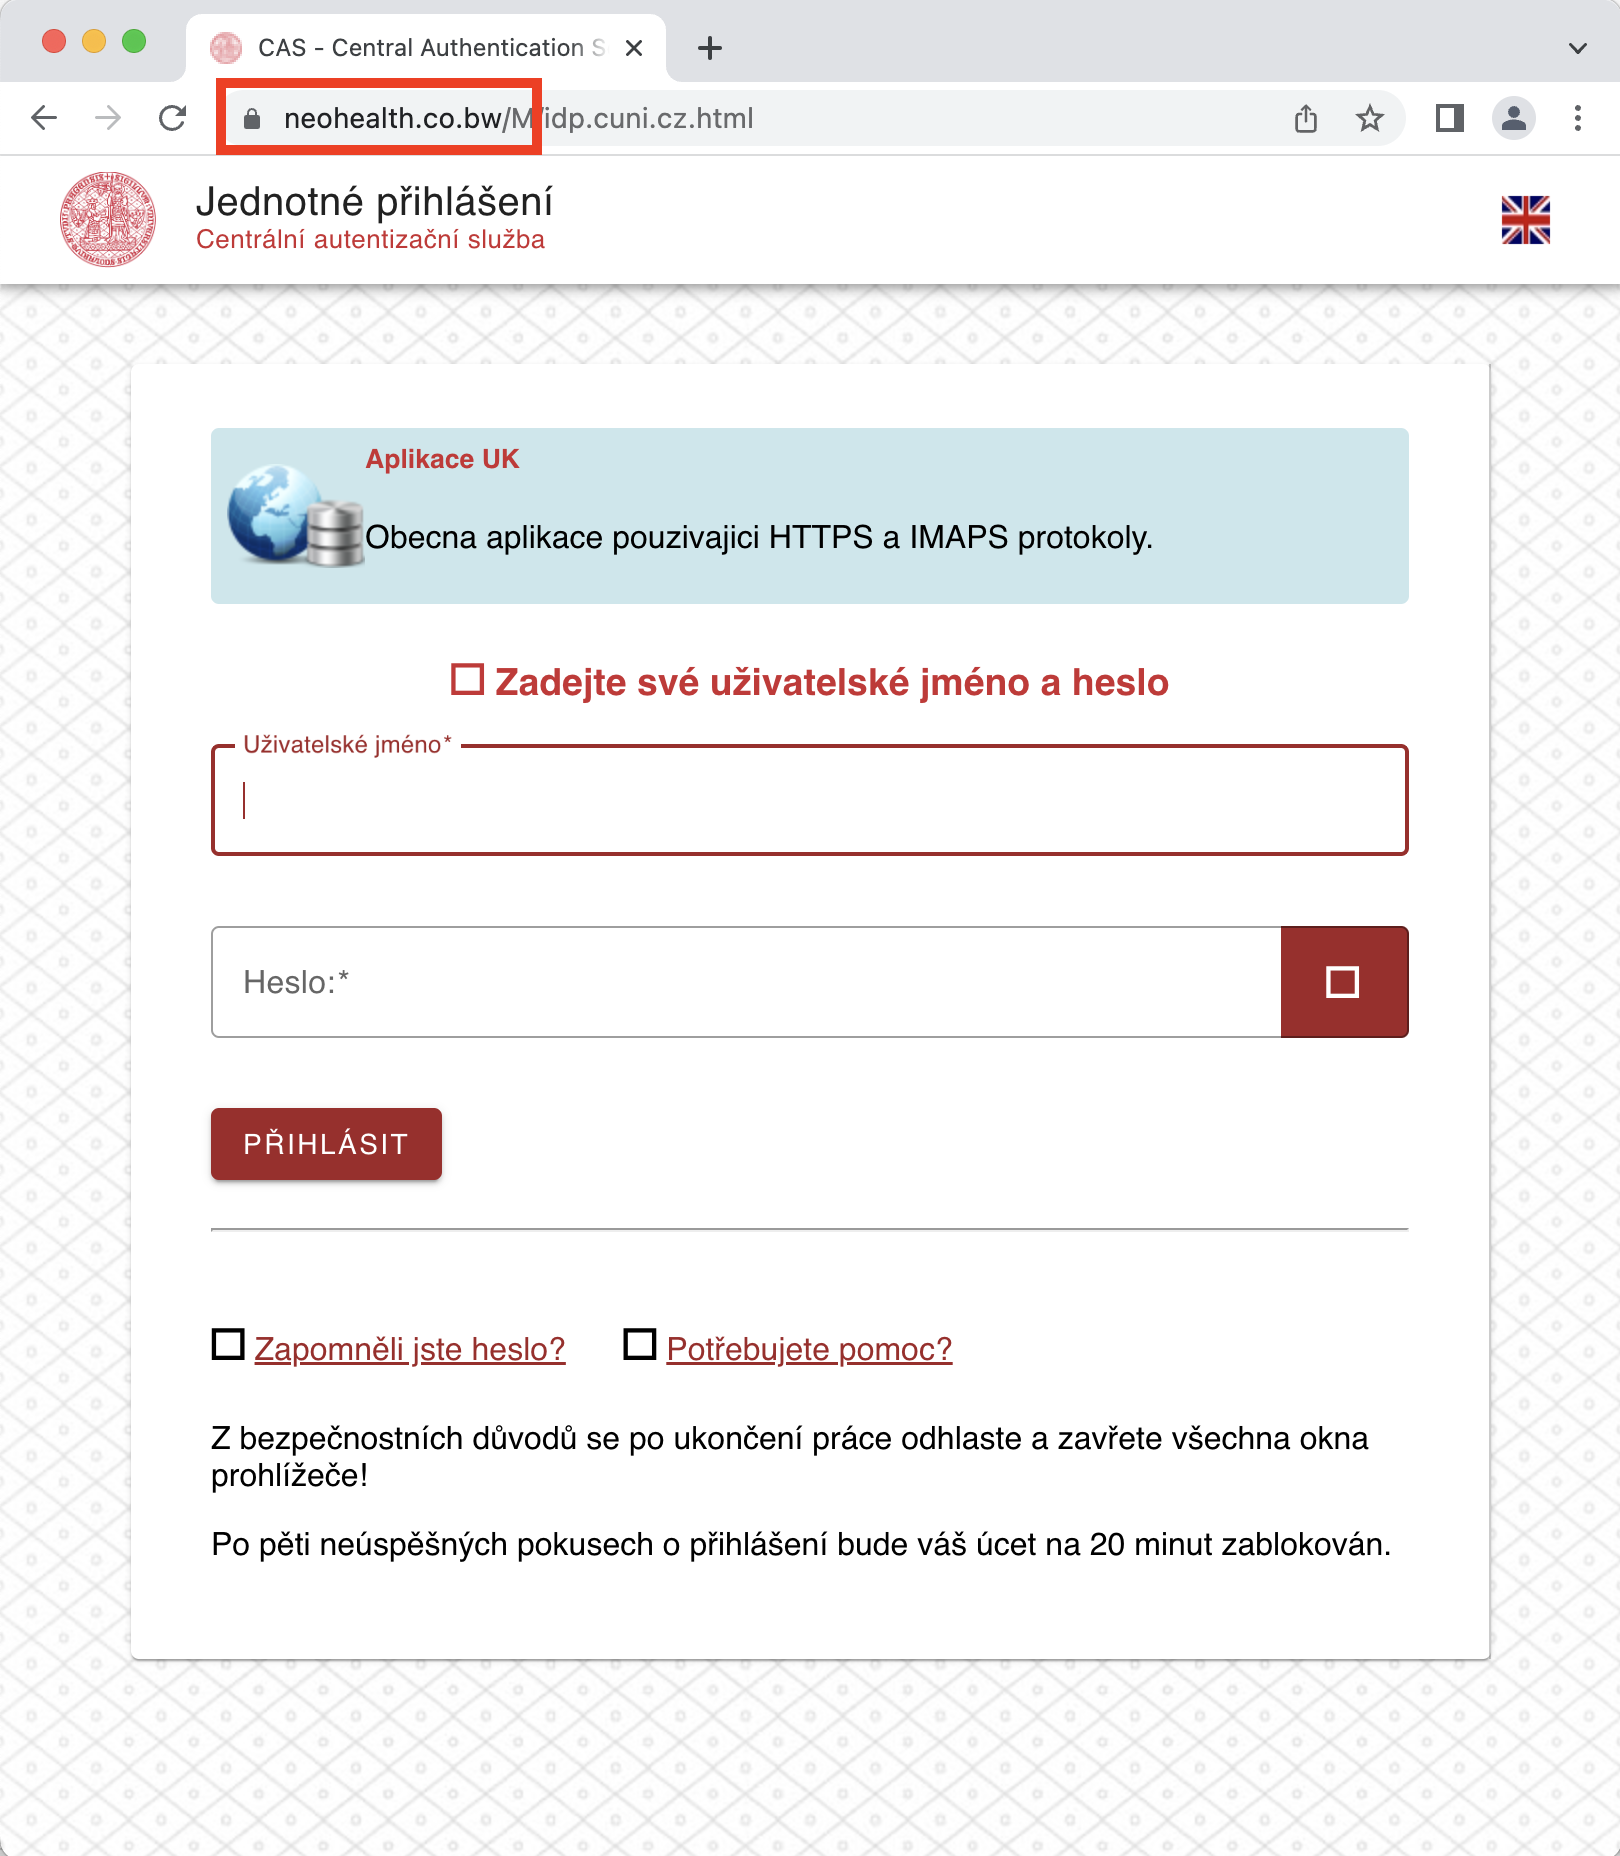 phishing form